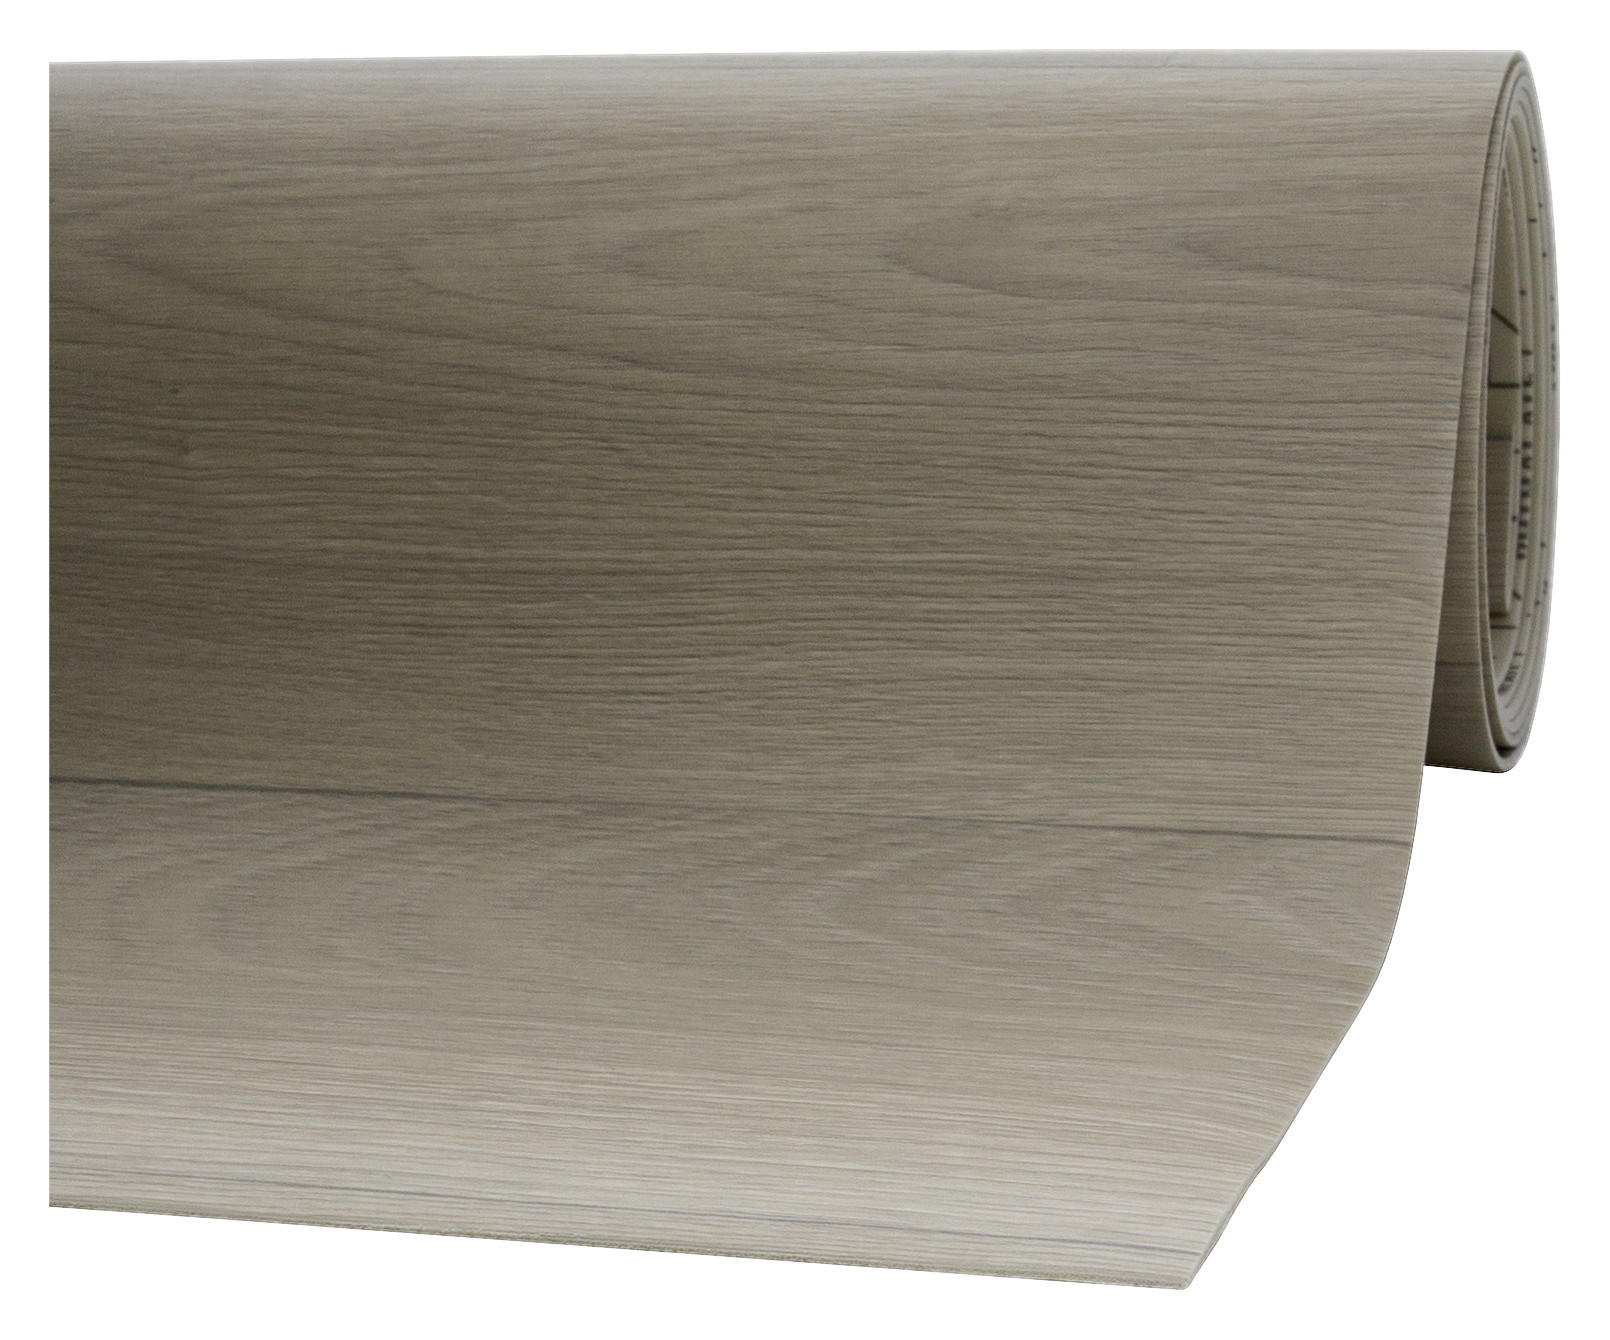 Vinylboden pro m² CV-Belag_Ventus 400x300 - weiß (400,00/300,00cm)